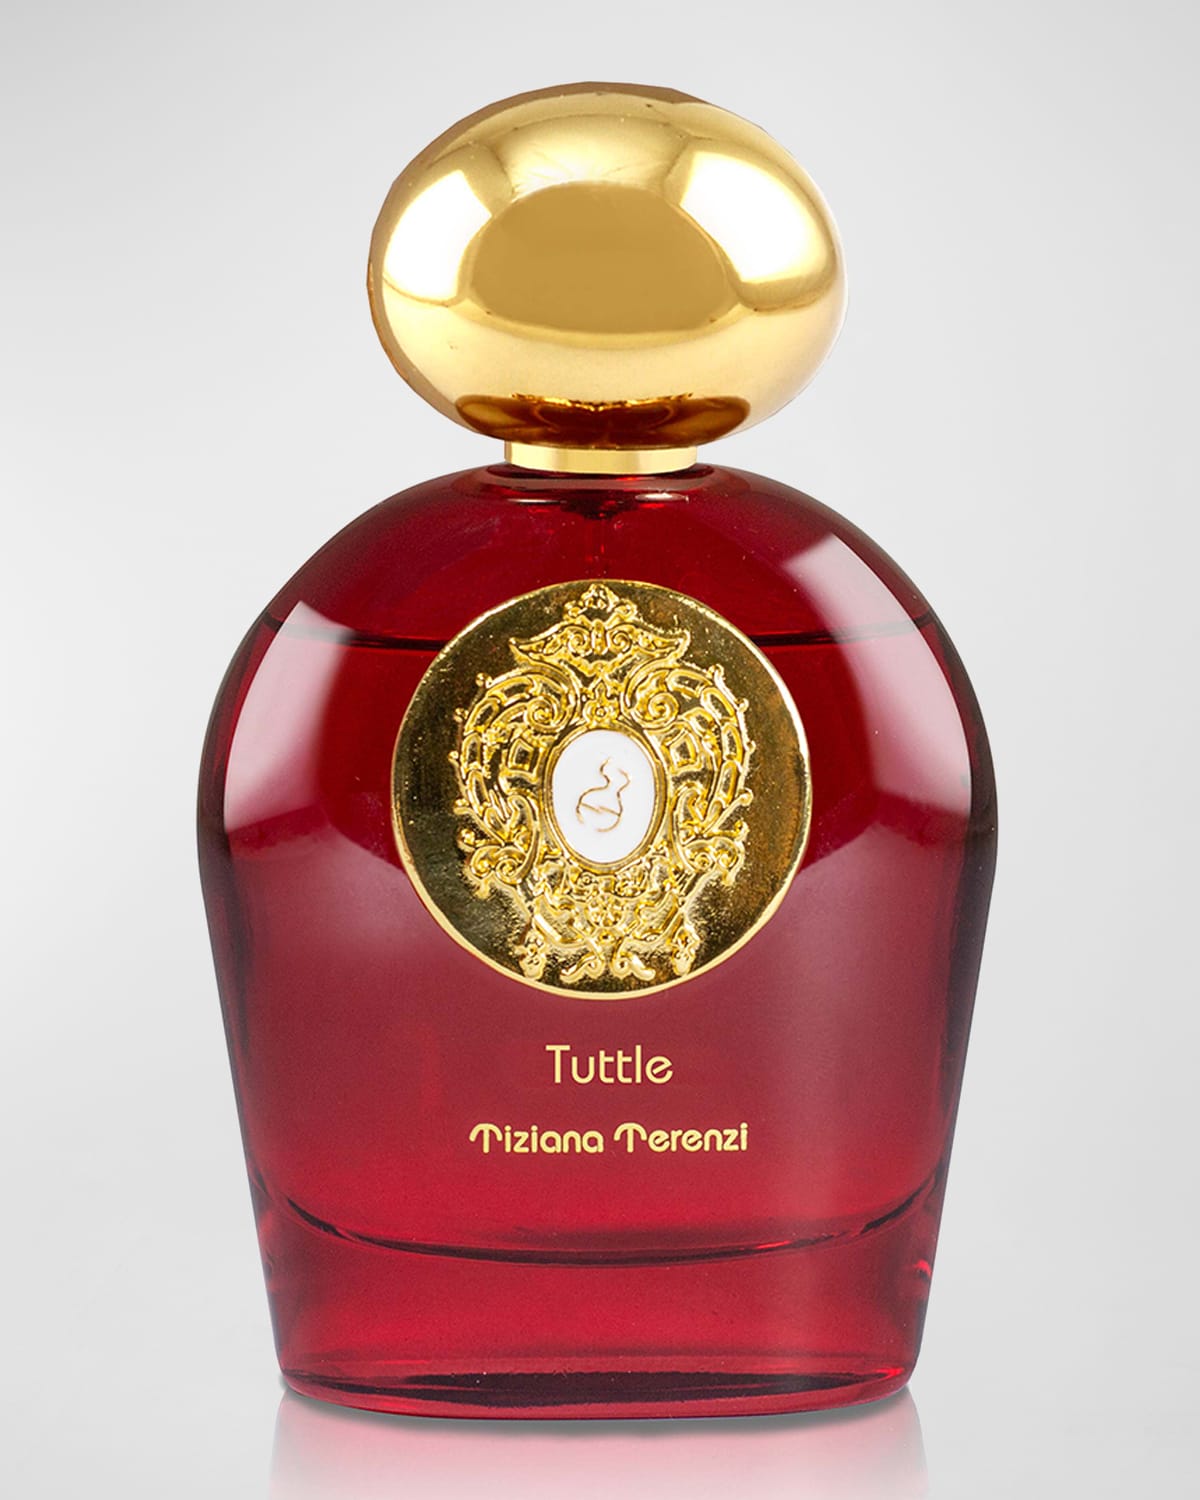 3.4 oz. Tuttle Extrait de Parfum